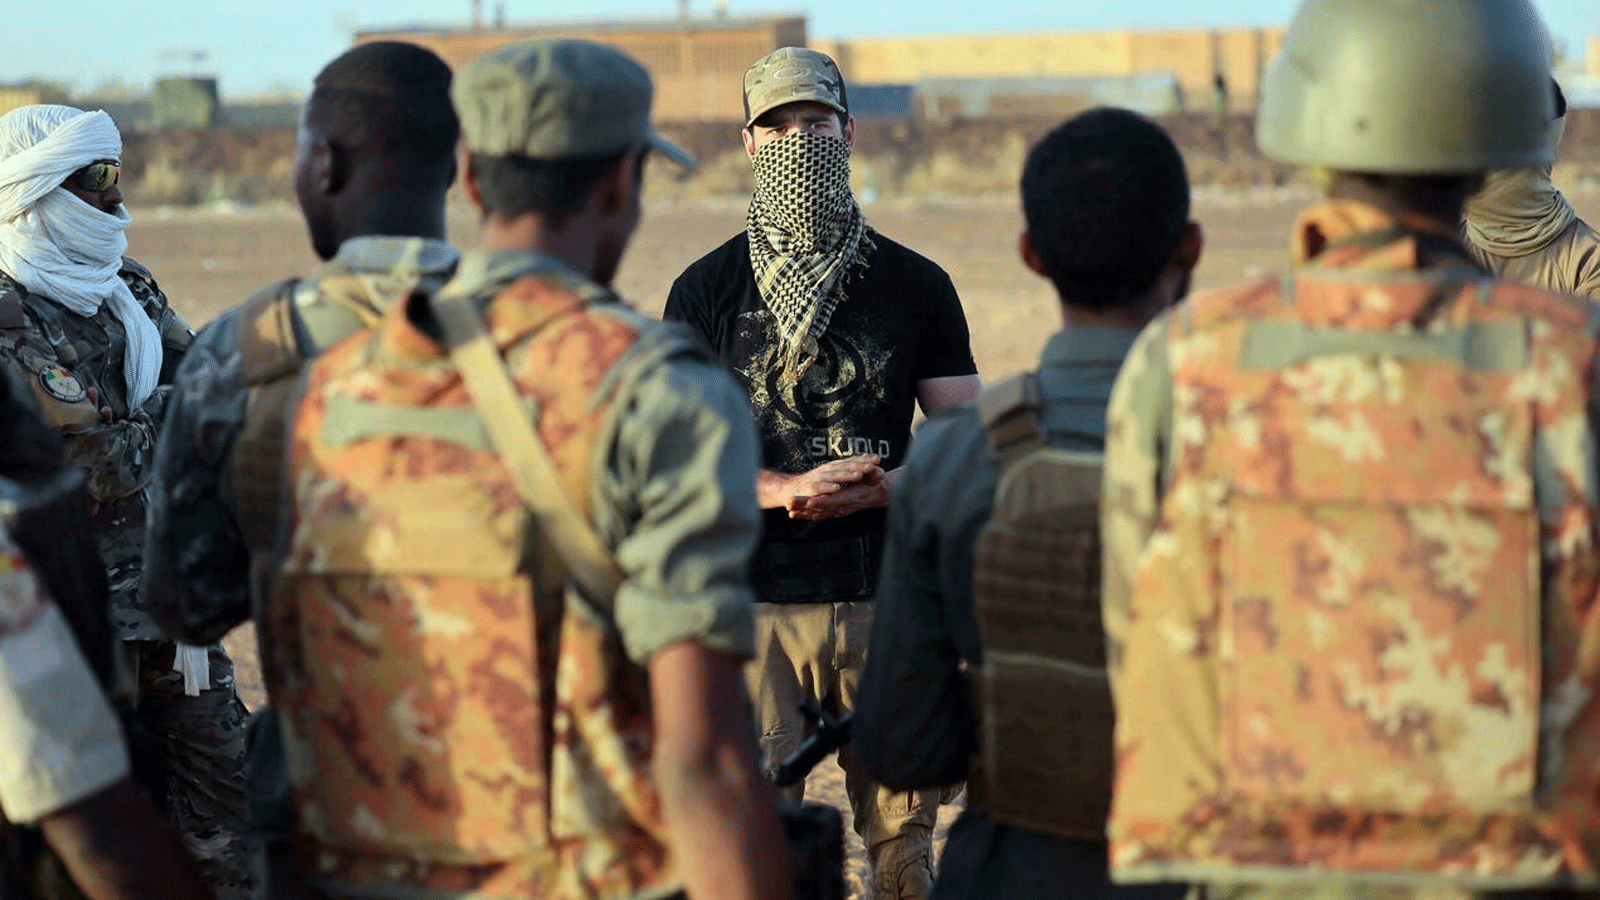 ضابط من قوات العمليات الخاصة البحرية الفرنسية يدرب جنود القوات المسلحة المالية في مالي في قاعدة ميناكا العسكرية في البلاد في 6 كانون الأول\ ديسمبر 2021